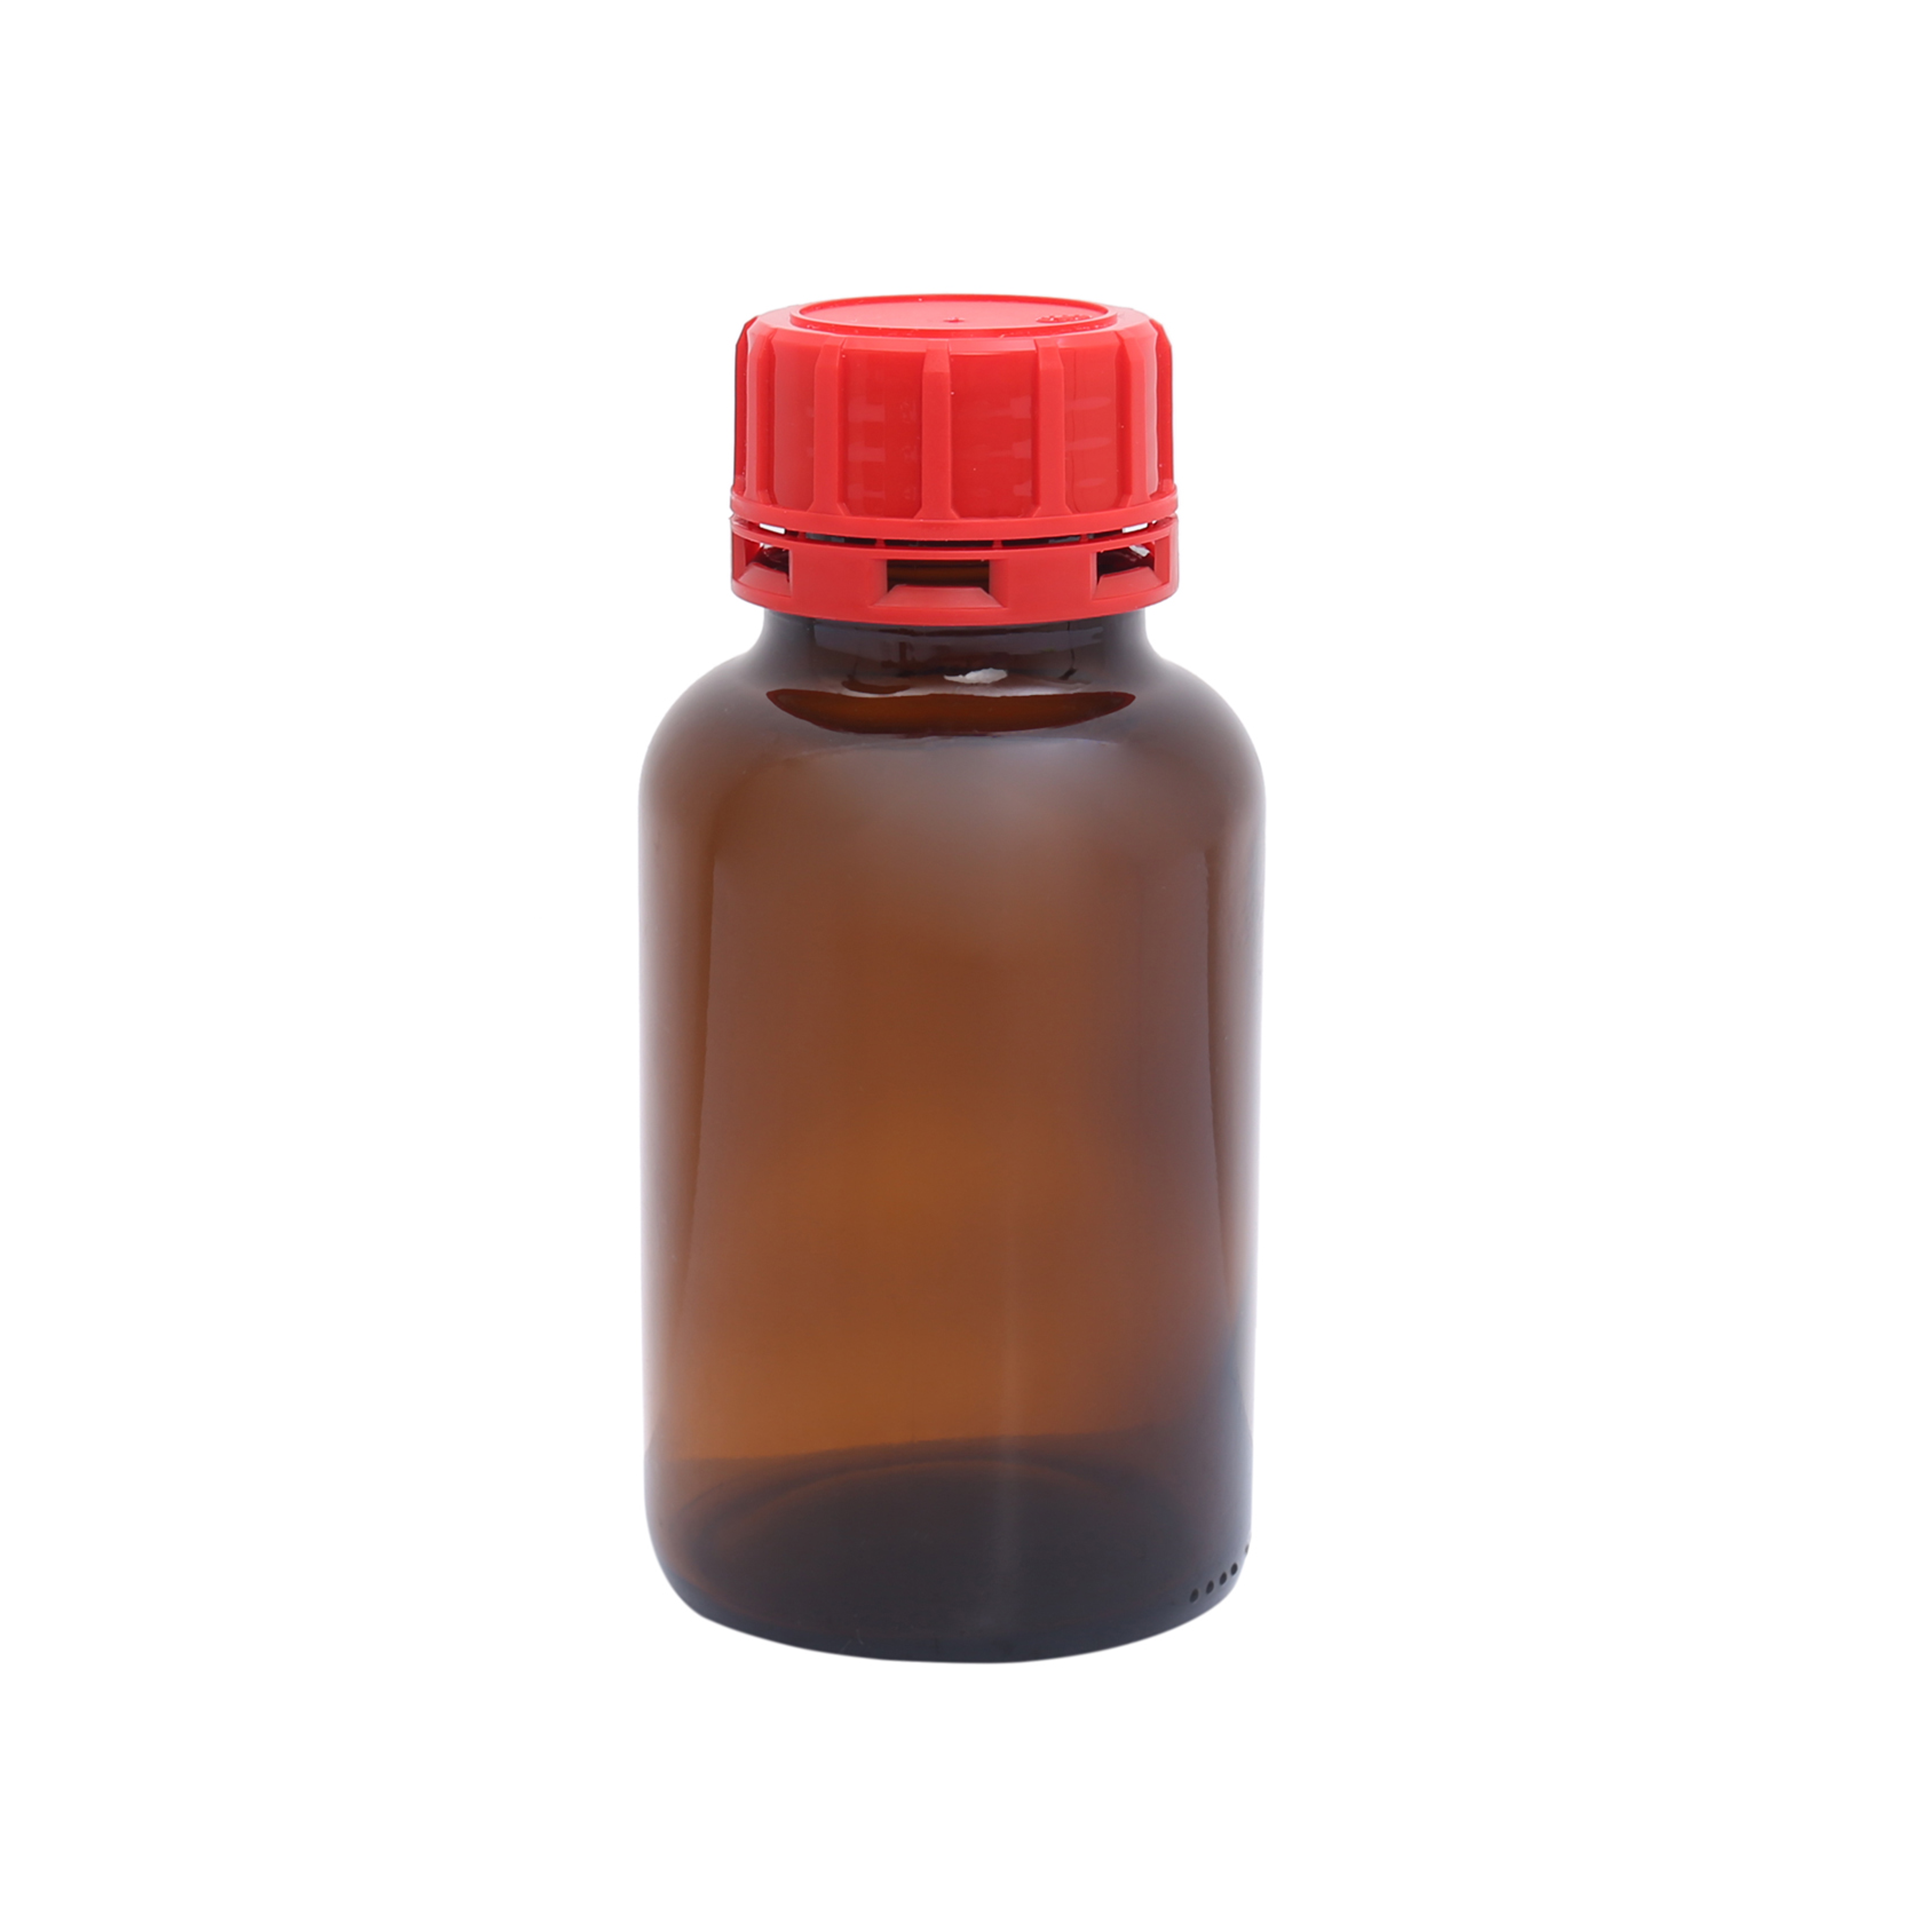 Borox Cam Amber Şişe Kırmızı Kapaklı Geniş Boyunlu - 250ml